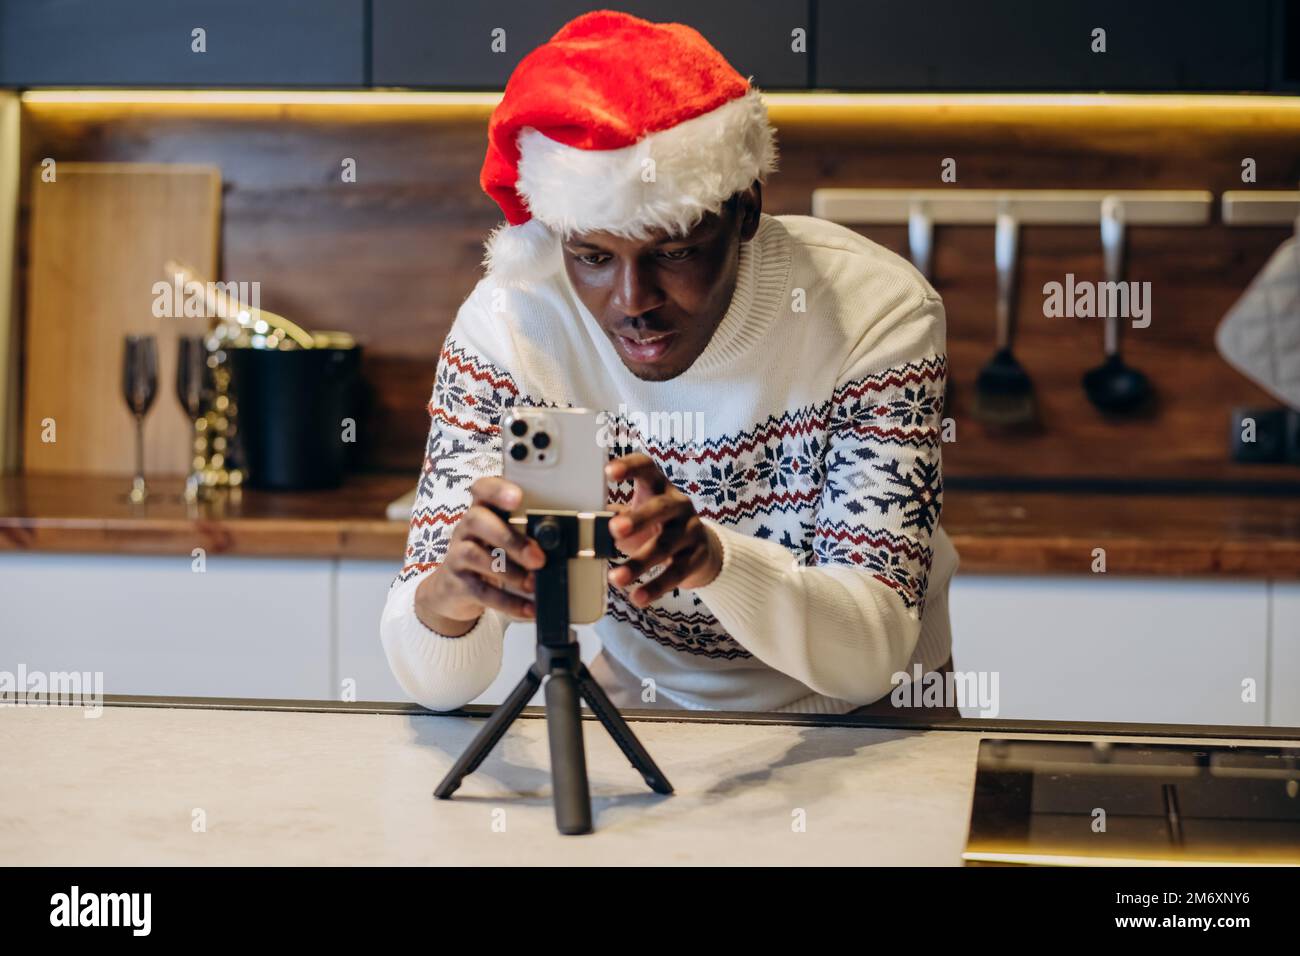 Hombre negro joven en el sombrero de Santa y vídeo impreso caliente de las películas del suéter usando smartphone que se coloca en el trípode en atmósfera de la Navidad en cocina Foto de stock